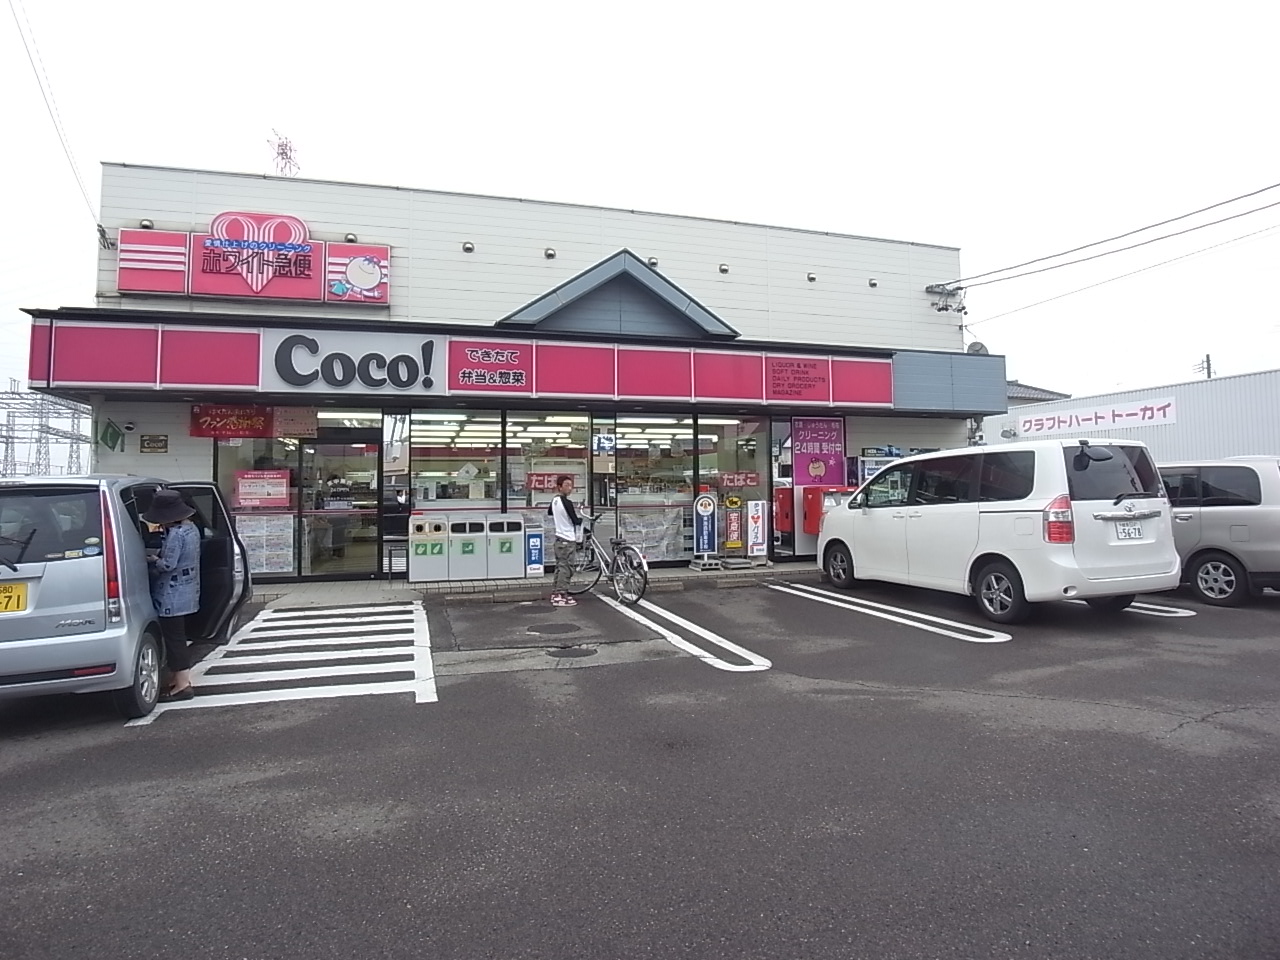 Convenience store. 255m to the Coco store Fukuda store (convenience store)